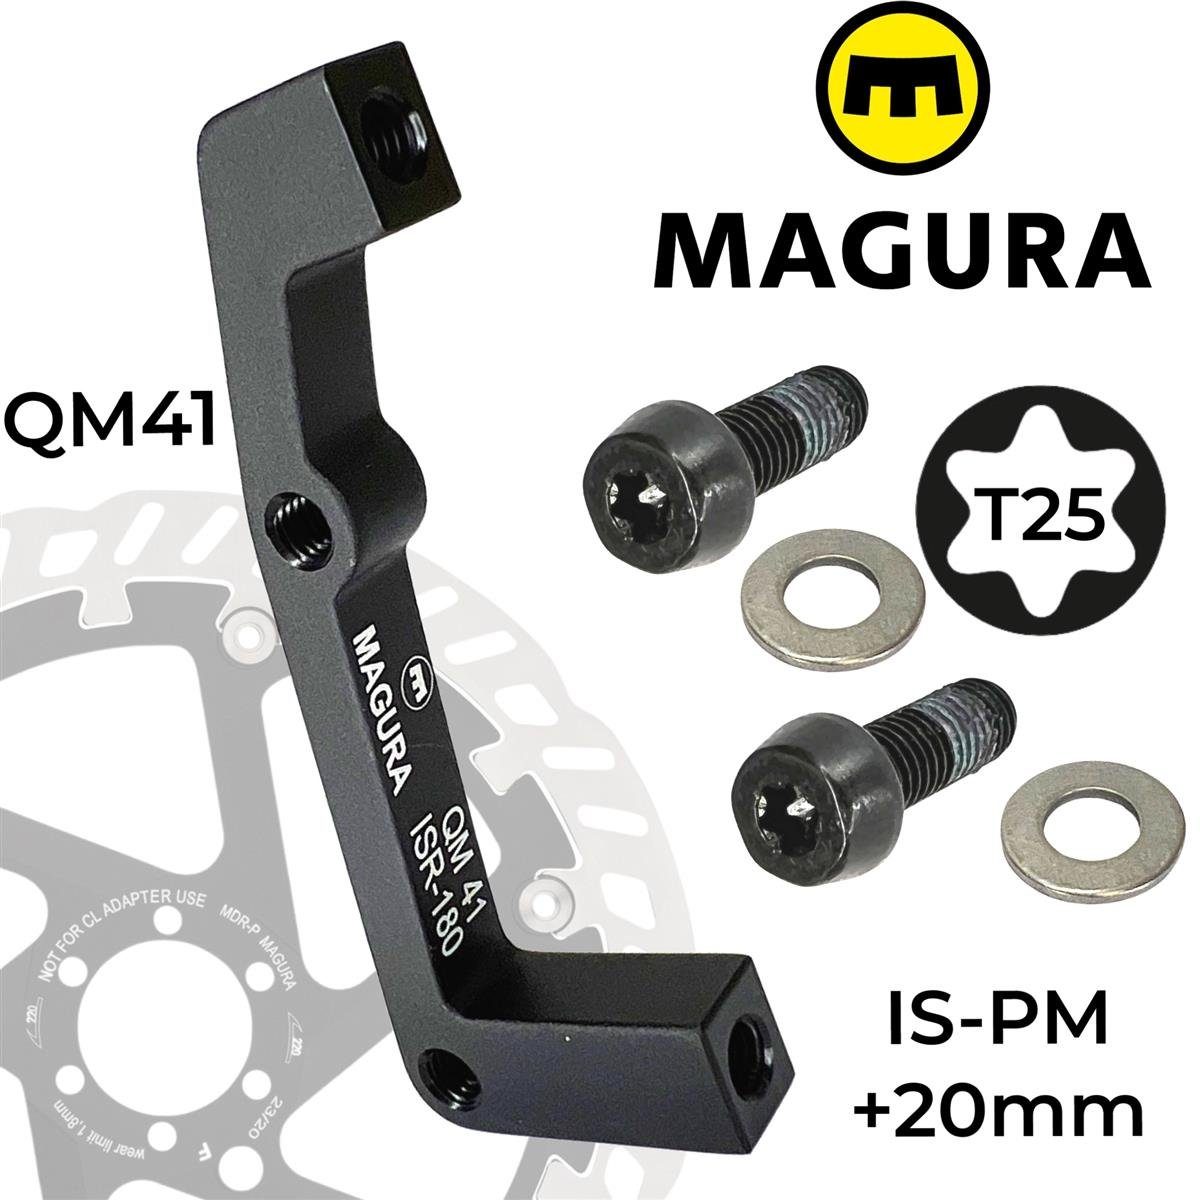 180-R Magura Scheibenbremse oder Magura Adapter Bremsscheiben VR QM41 200 IS